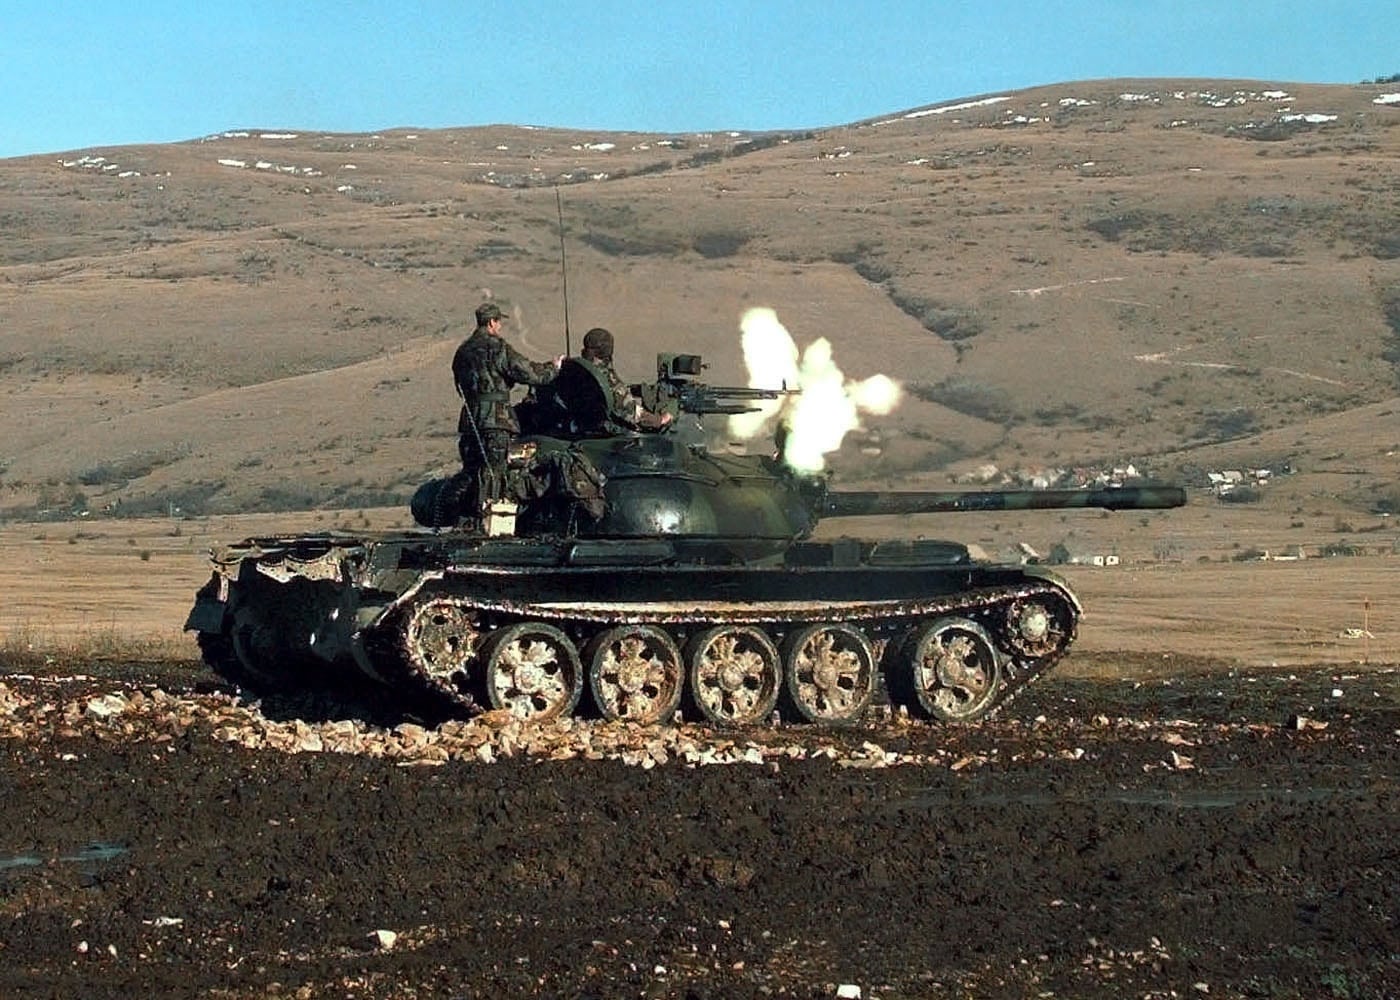 croatian t-55 tank in training